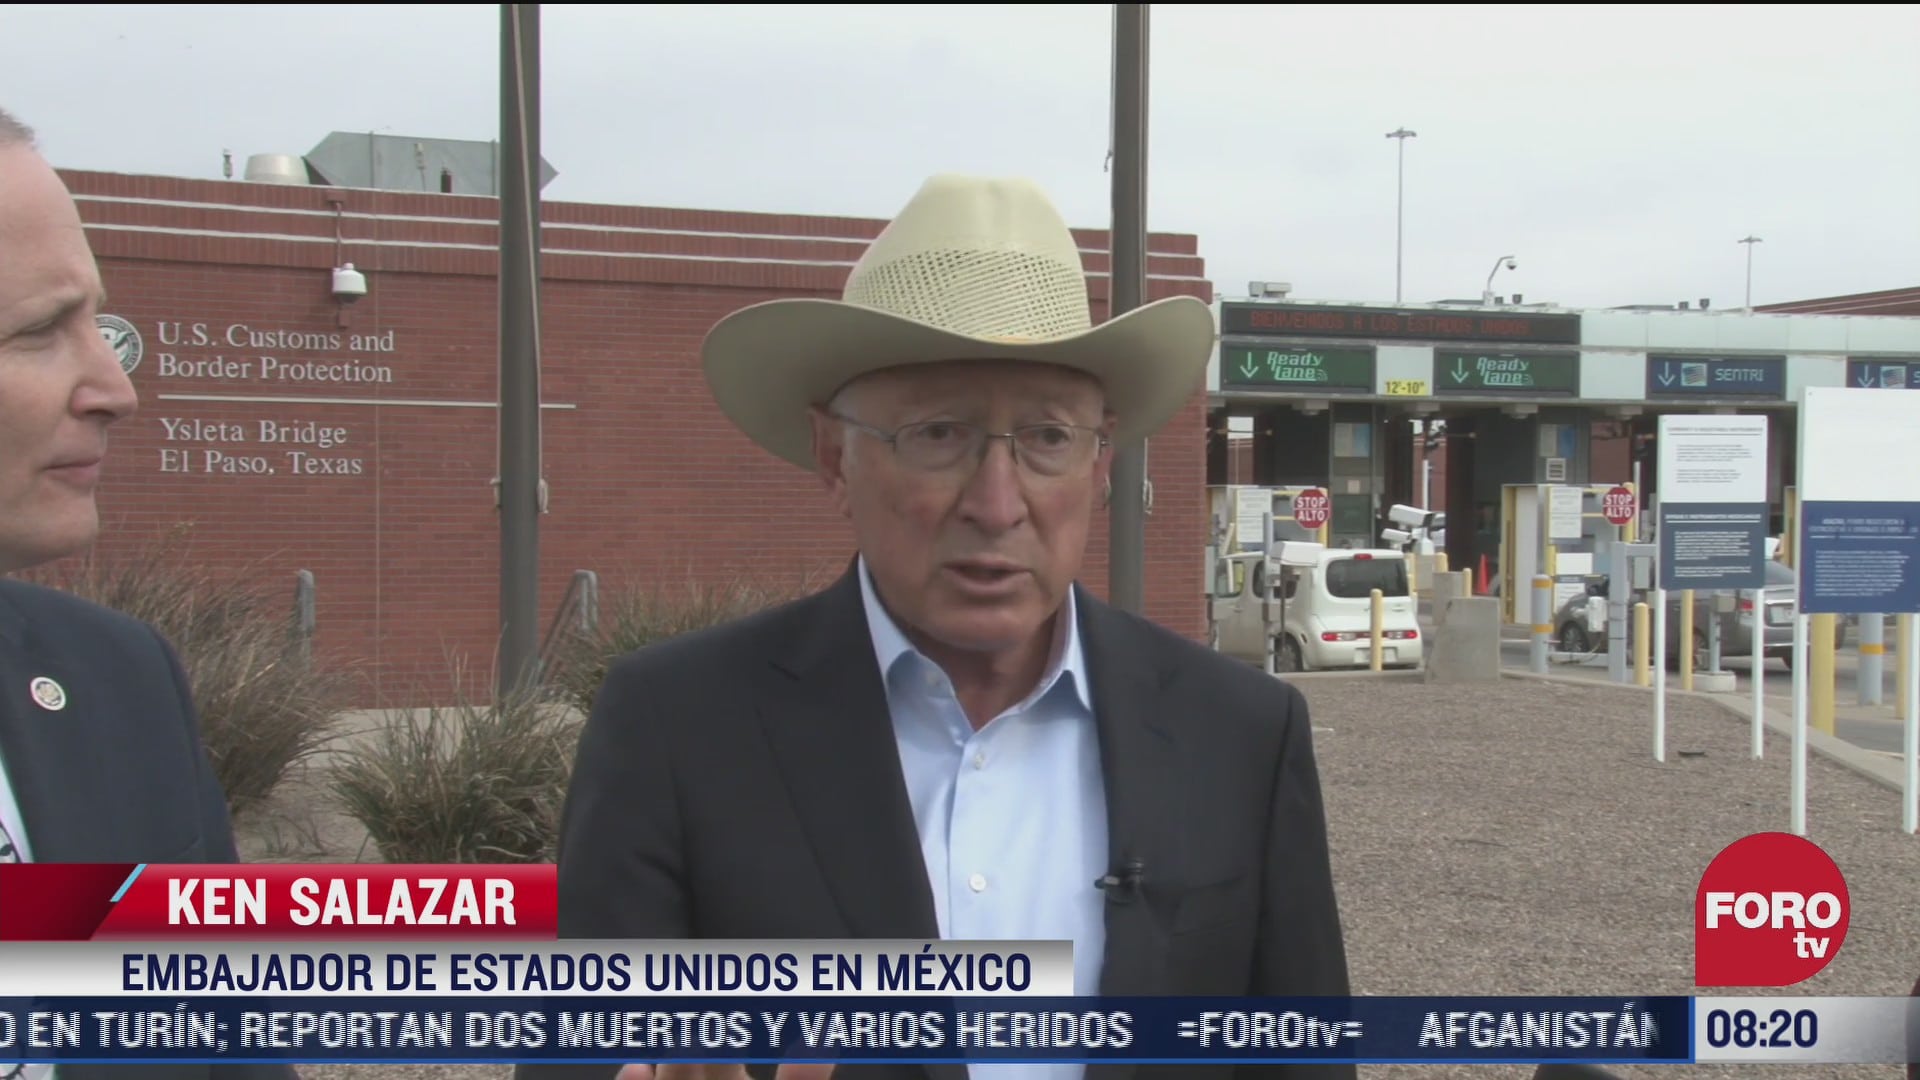 ken salazar embajador de eeuu en mexico visita la frontera de texas con chihuahua